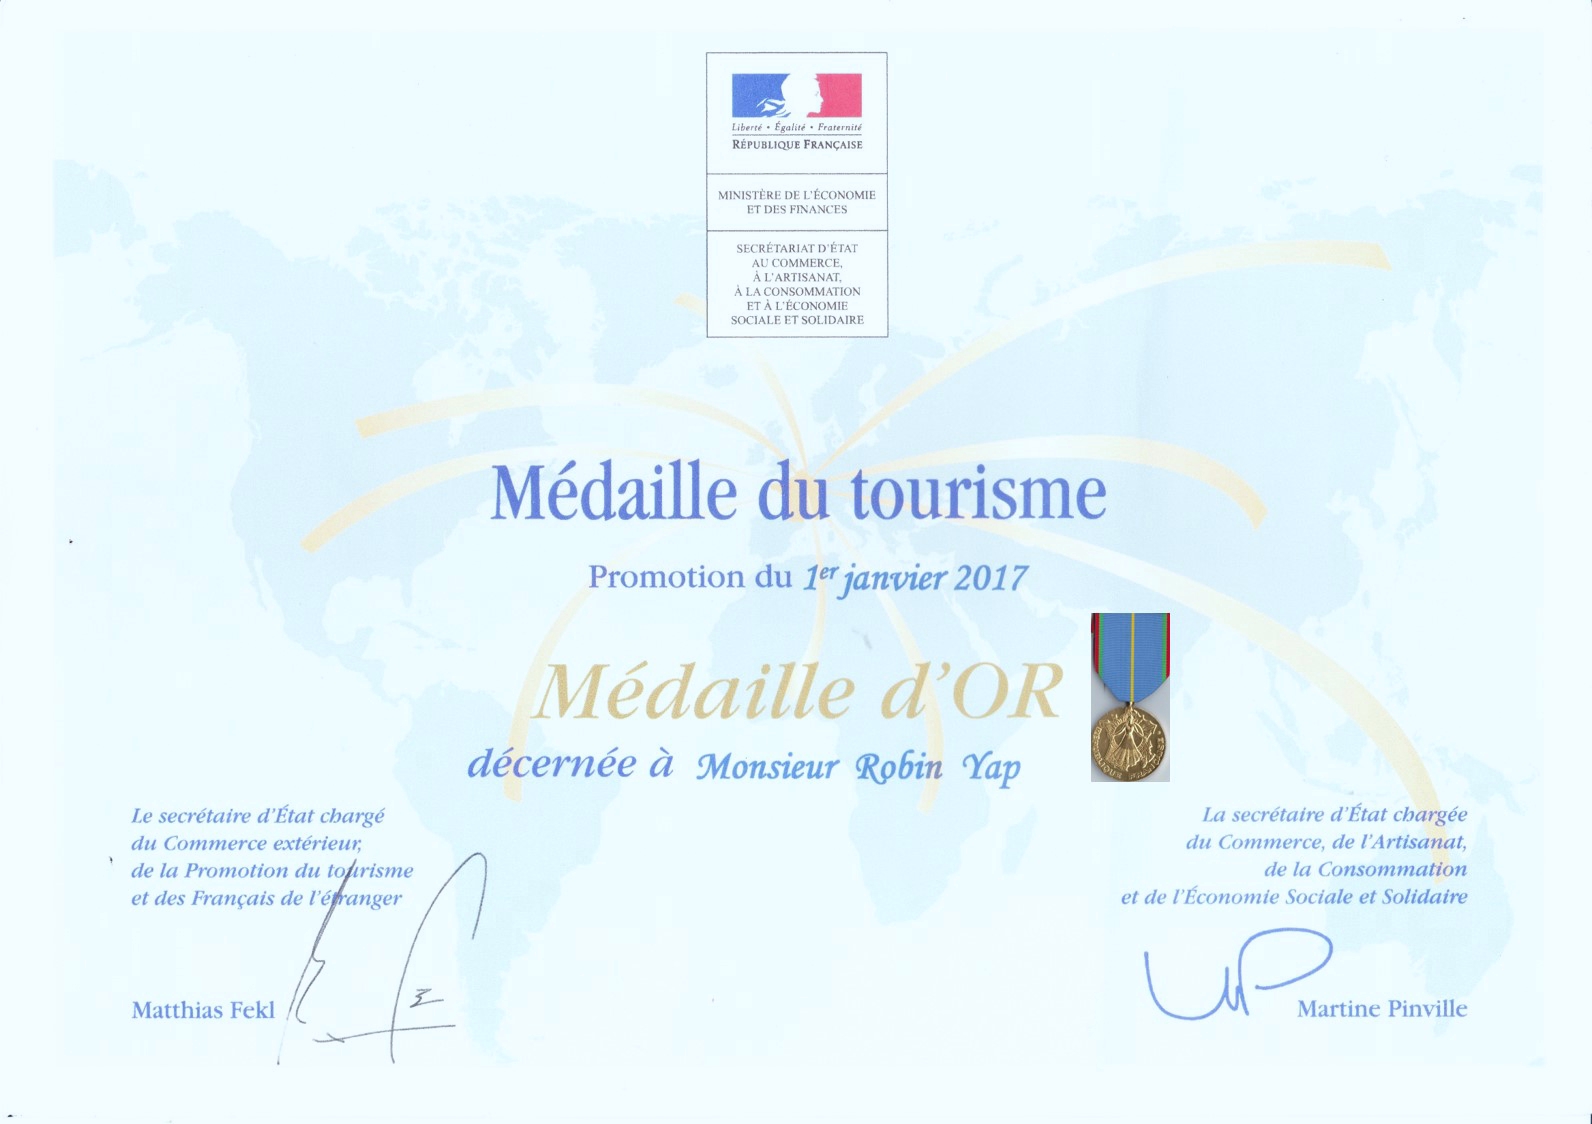 Medaille du tourisme 2017